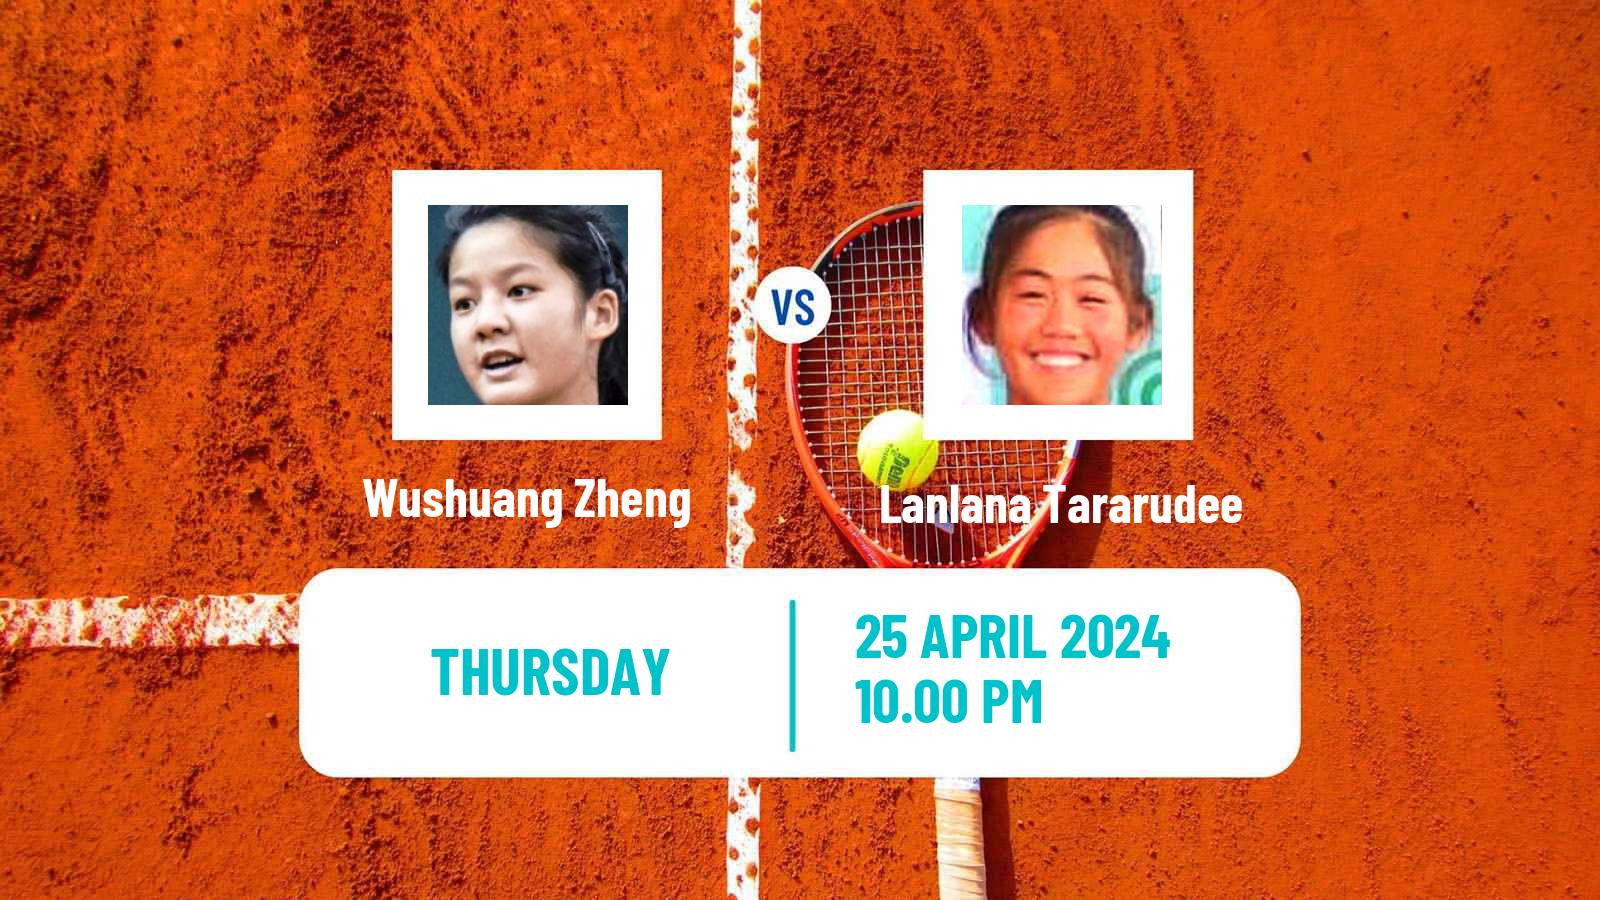 Tennis ITF W50 Wuning Women Wushuang Zheng - Lanlana Tararudee